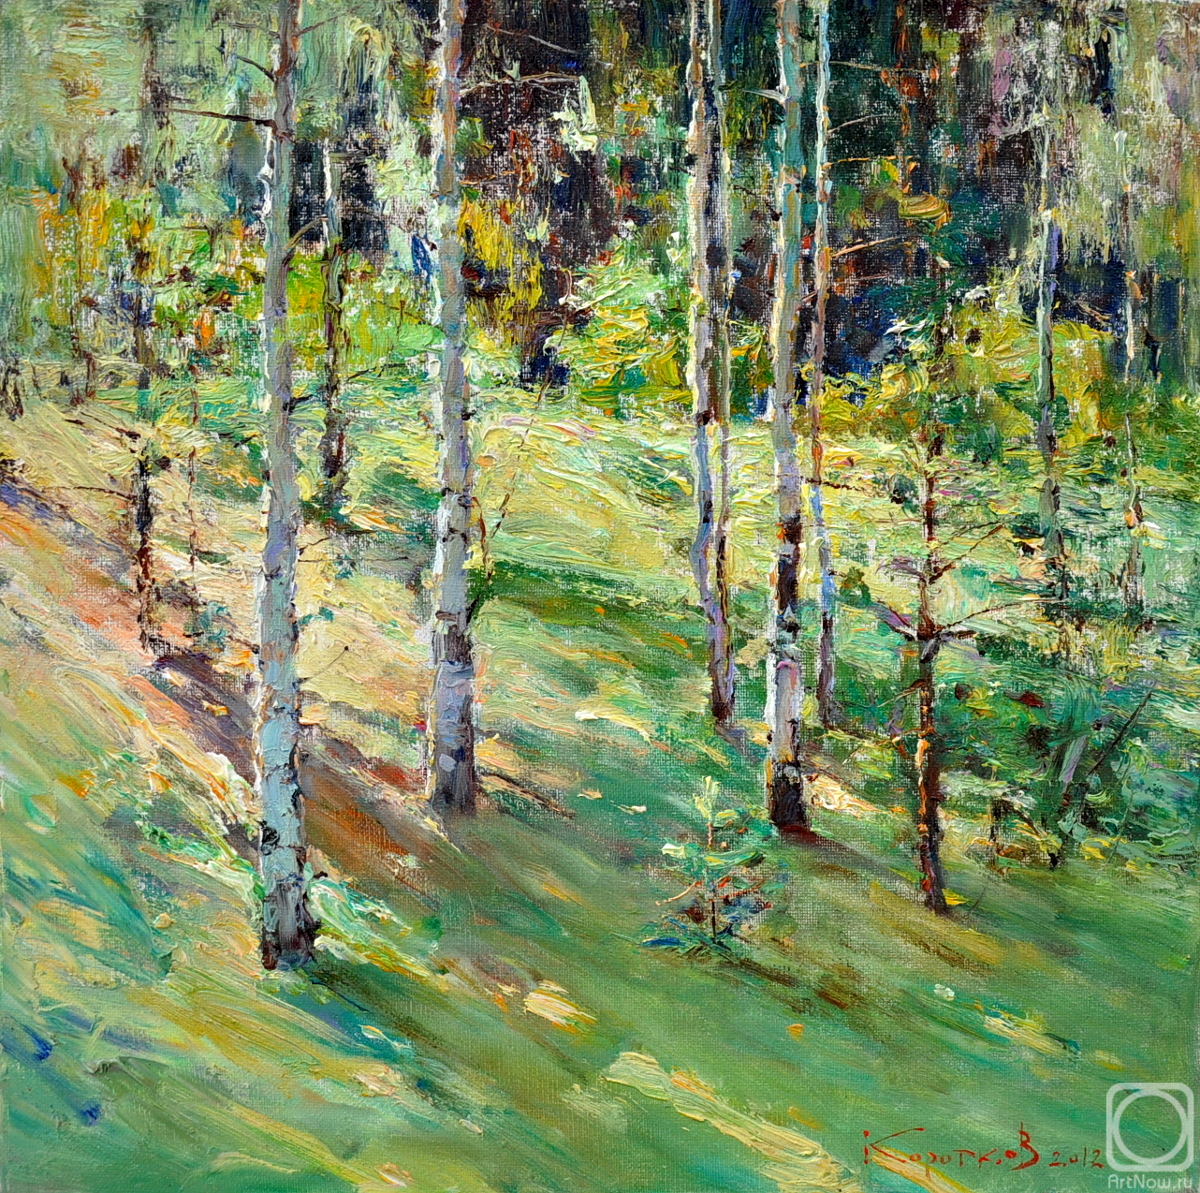 Korotkov Valentin. Birch trees